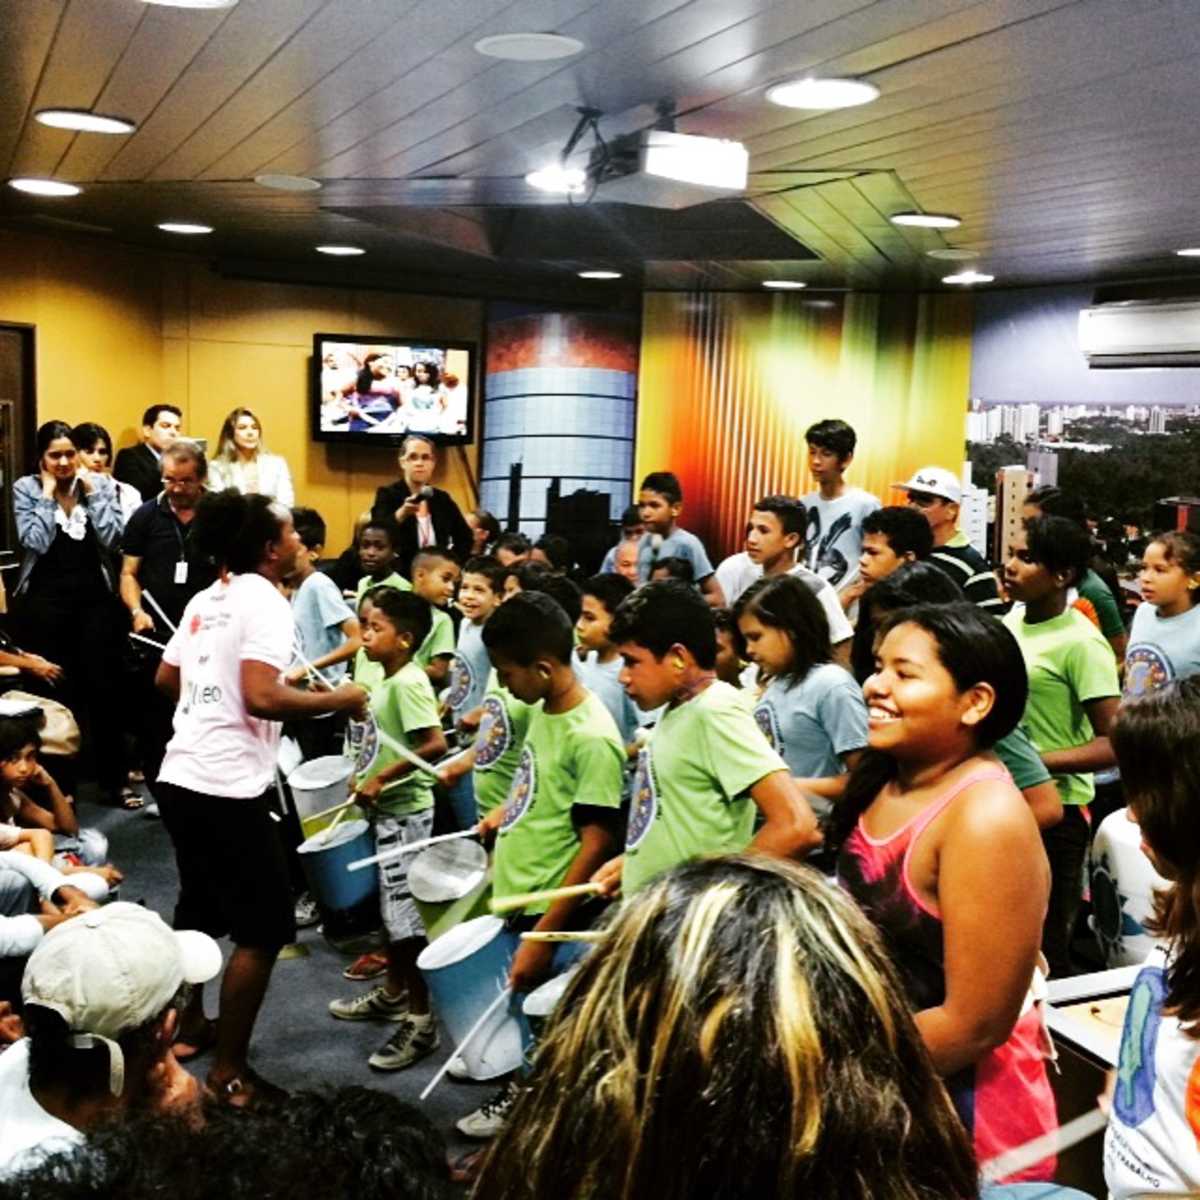 Banda de Lata do Jangurussu: crianças se apresentam em auditório lotado